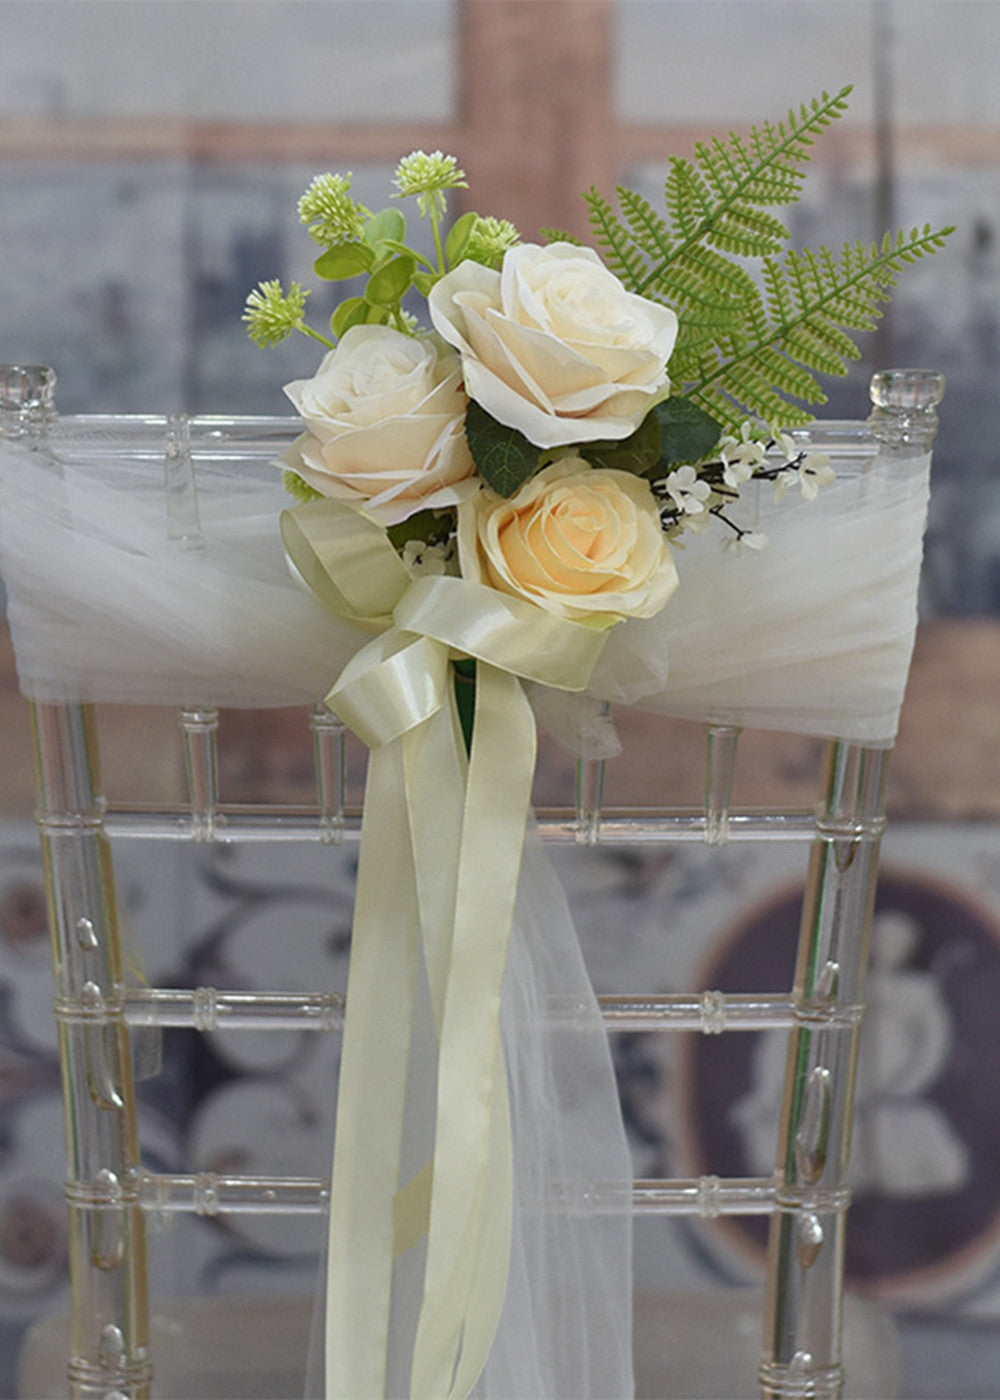 3 PCS Wedding Aisle Chair Floral Decorations